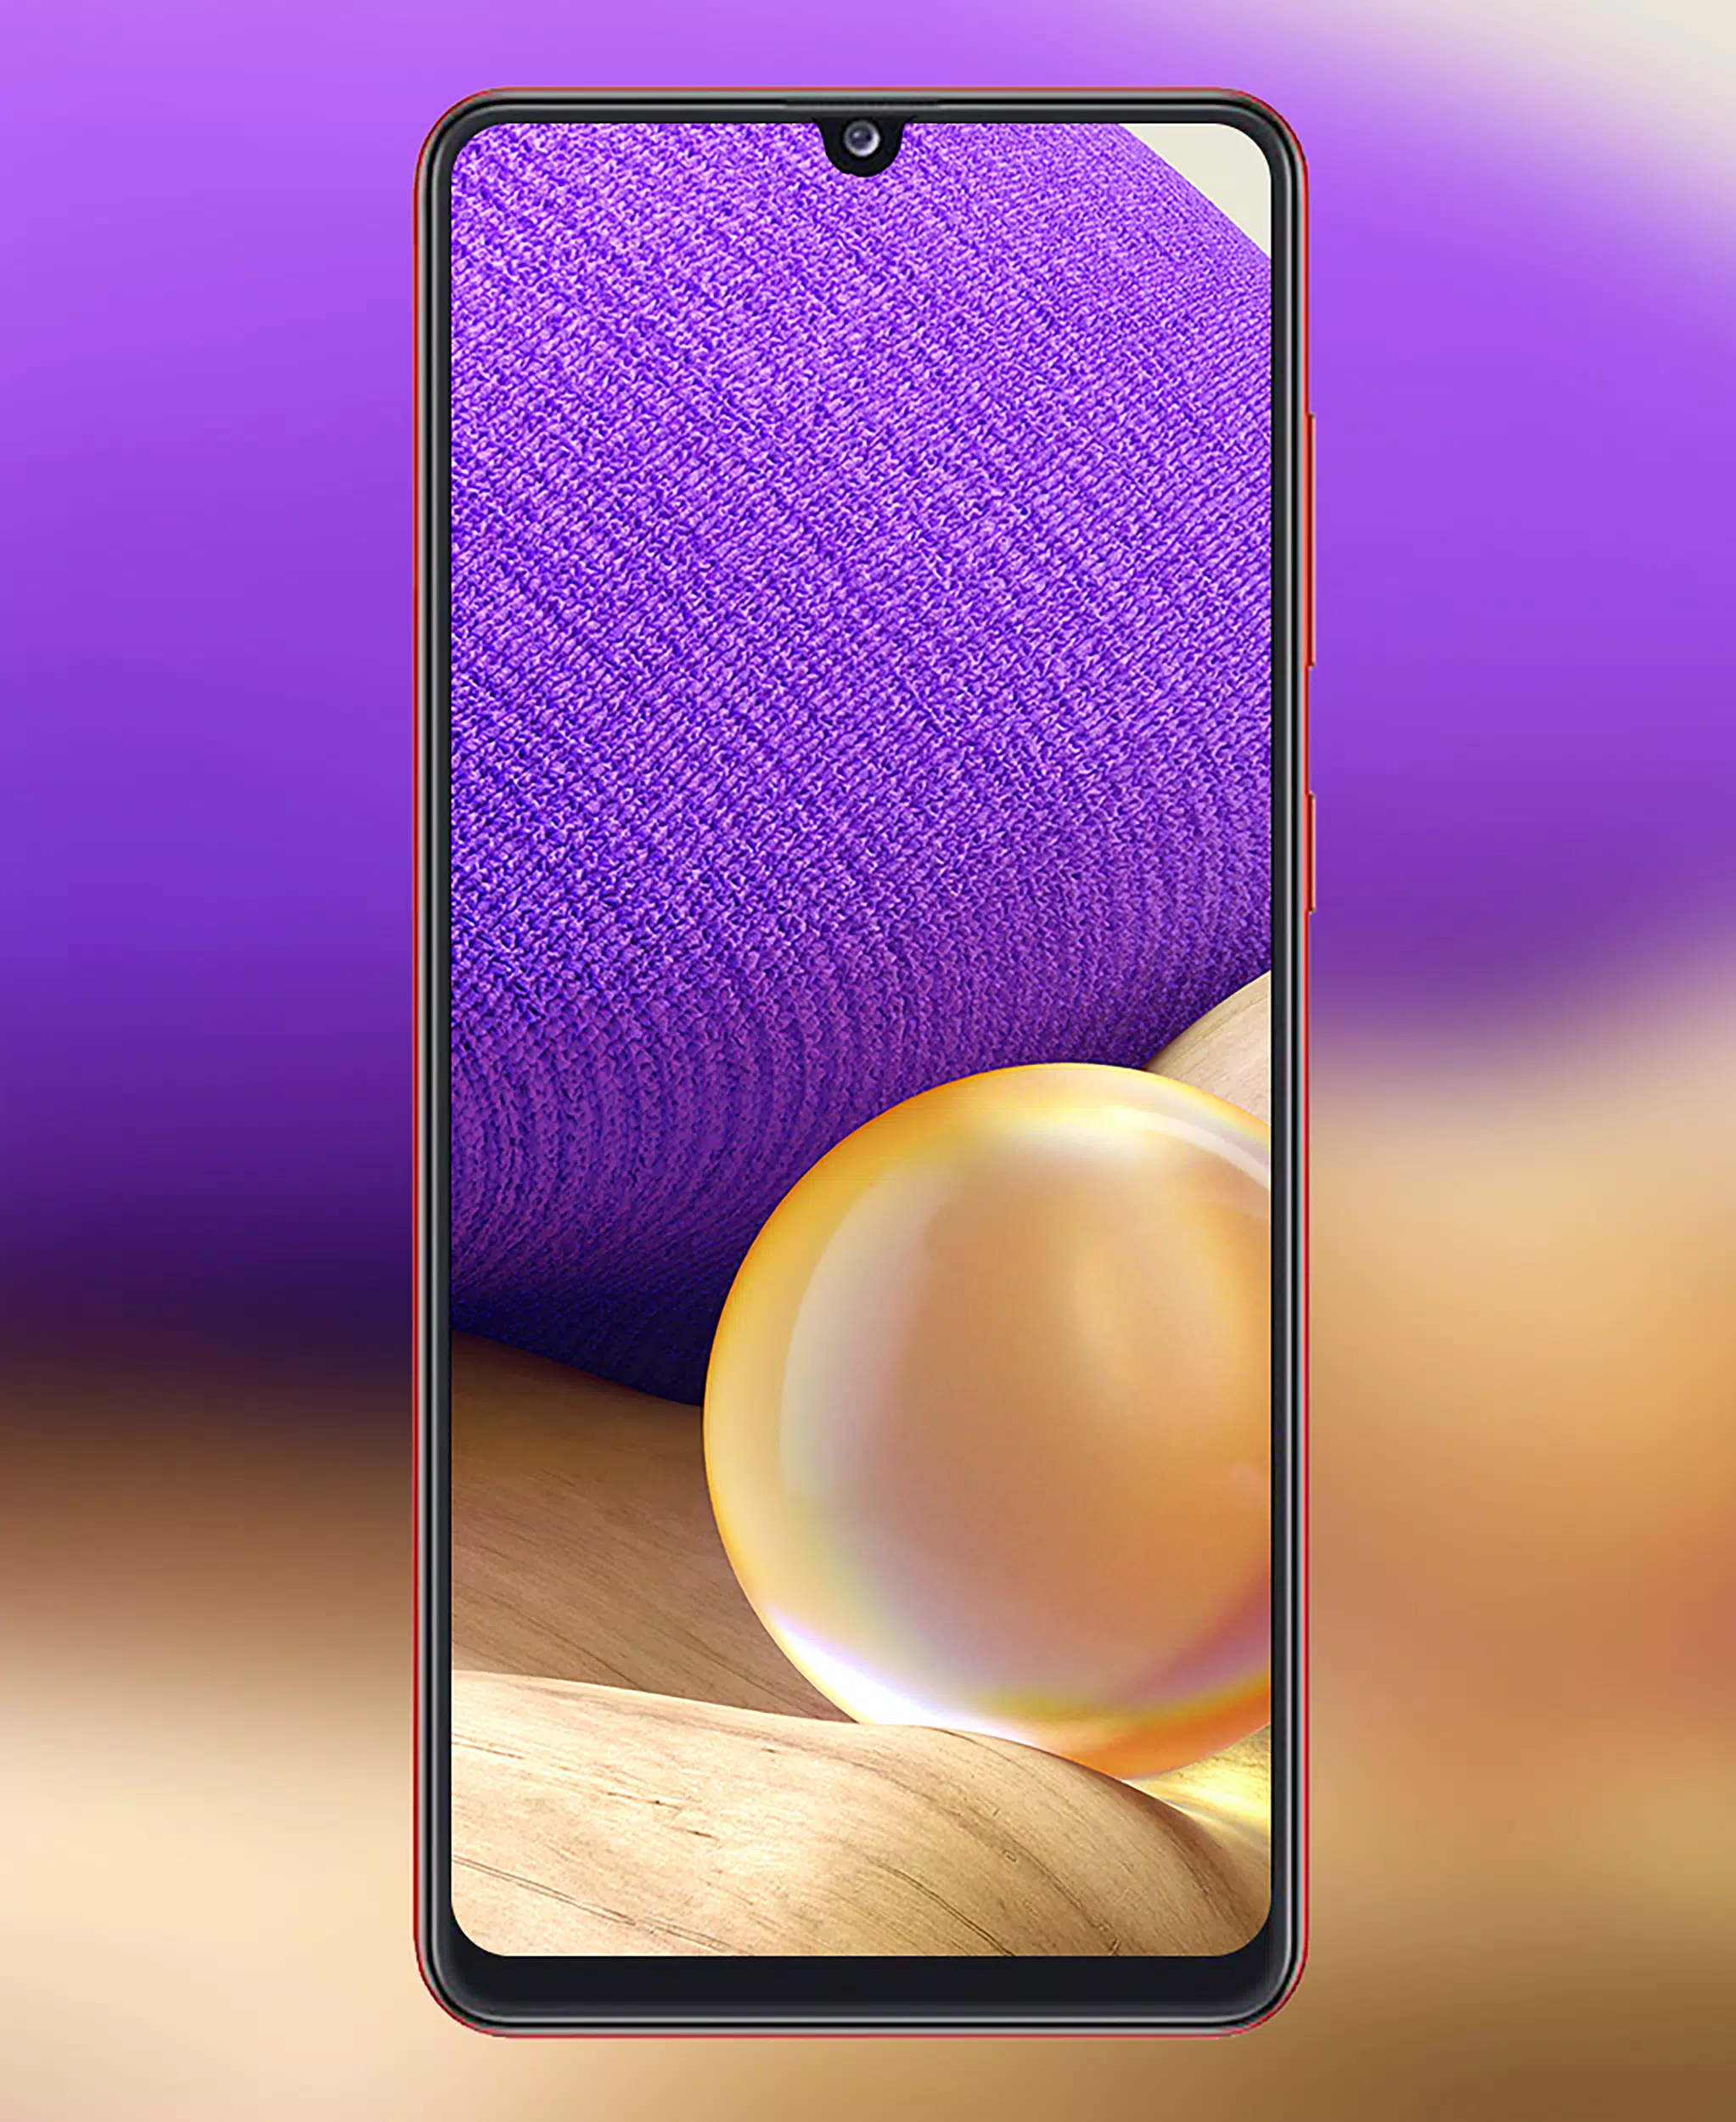 Hãy cập nhật chiếc điện thoại Samsung A31 hoặc A32 của bạn với những bức hình nền đẹp mắt nhất! Với độ phân giải cao, màu sắc tươi sáng, chất lượng hình ảnh tuyệt vời, bạn sẽ không thể rời mắt khỏi màn hình đẹp của điện thoại bạn. Hãy khám phá ngay để tùy chỉnh cho màn hình nền của bạn trở nên thật độc đáo và bắt mắt.